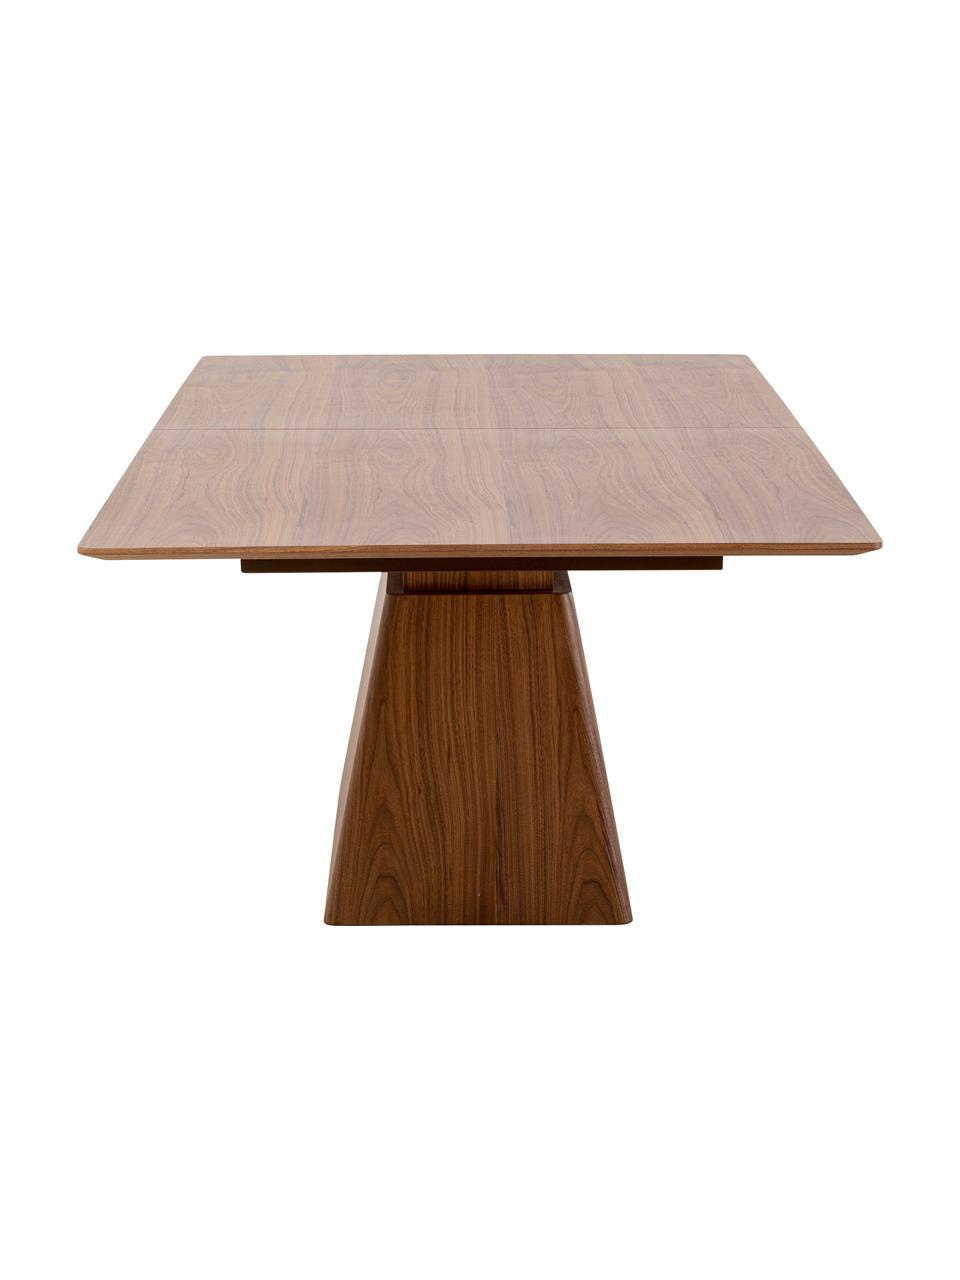 Table extensible Benvenuto, 200 - 250 x 110 cm, Bois, larg. 200 x prof. 110 cm